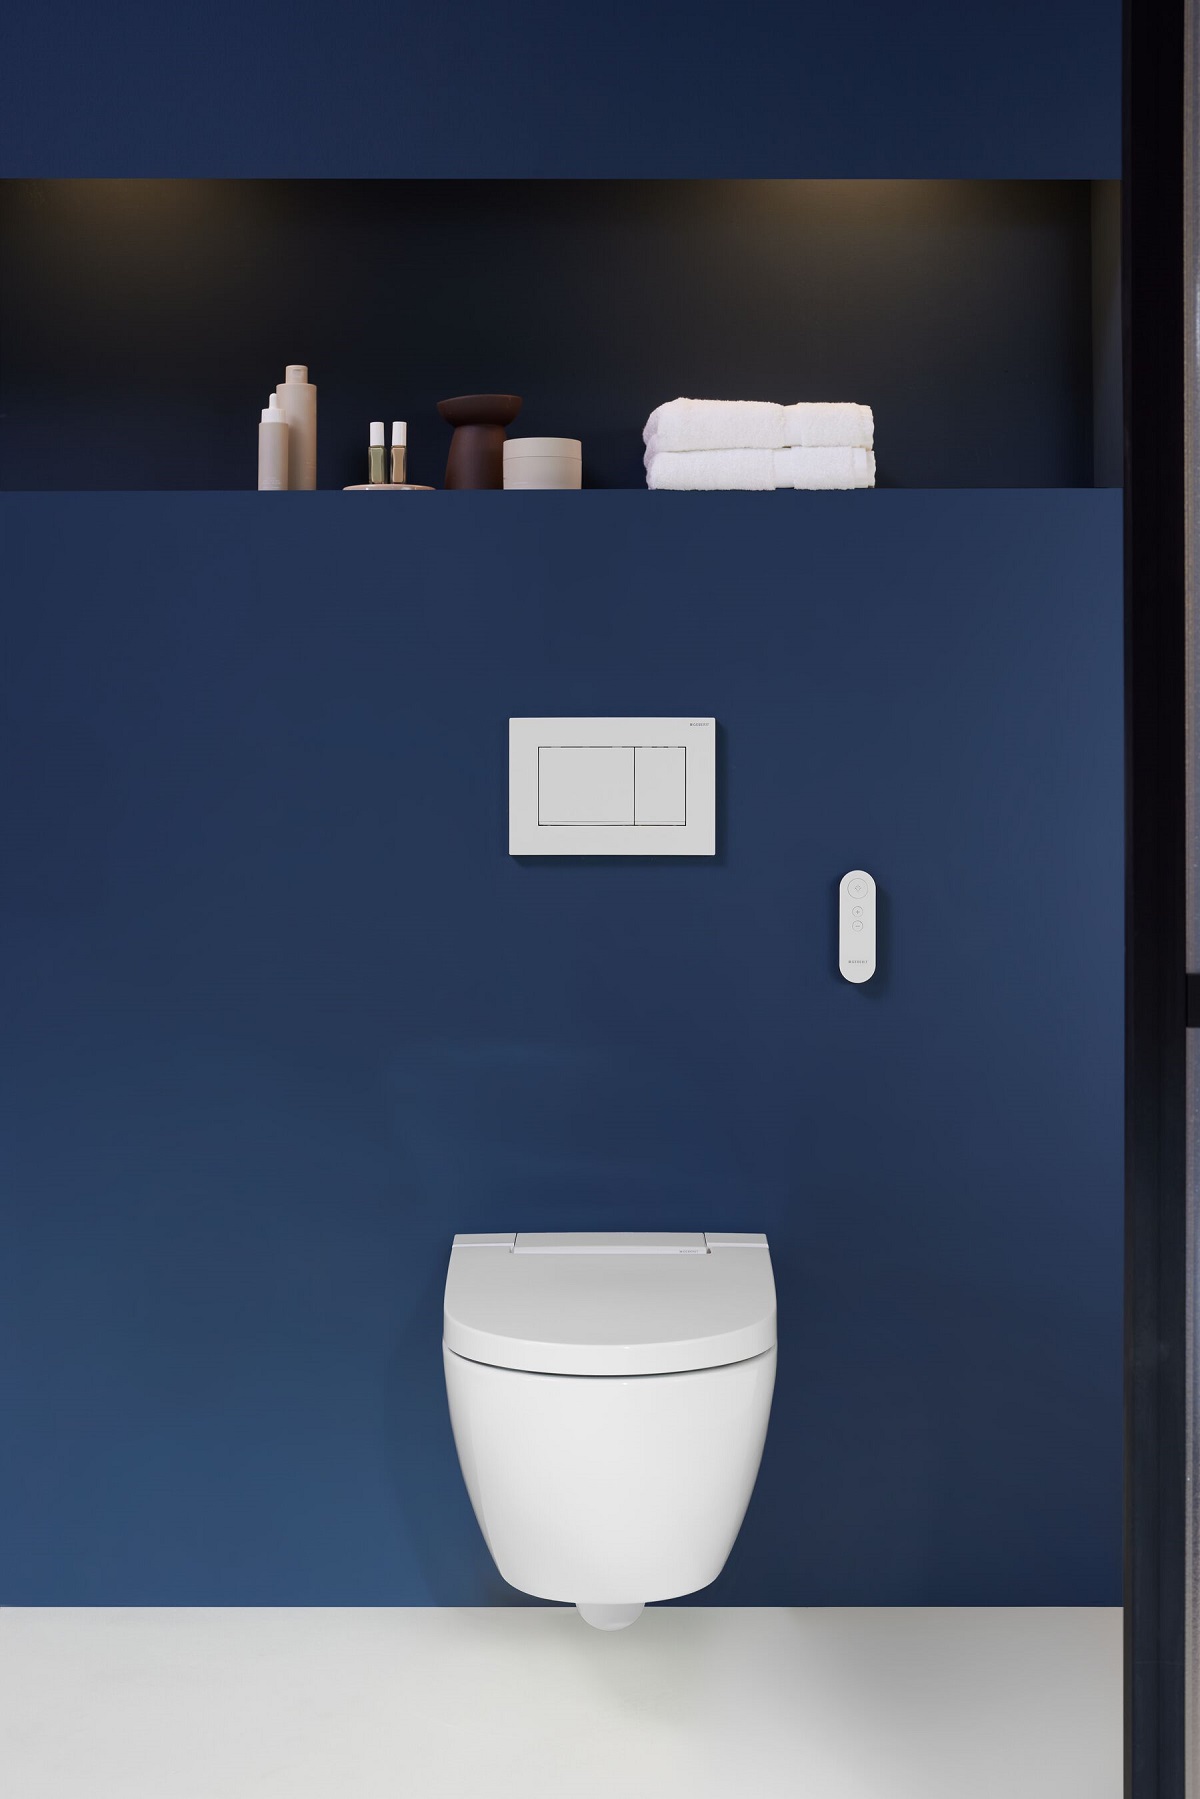 Moderní design snoubený s pohodlím: sprchovací WC AquaClean Alba se stylovým splachovacím tlačítkem a dálkovým ovládáním.